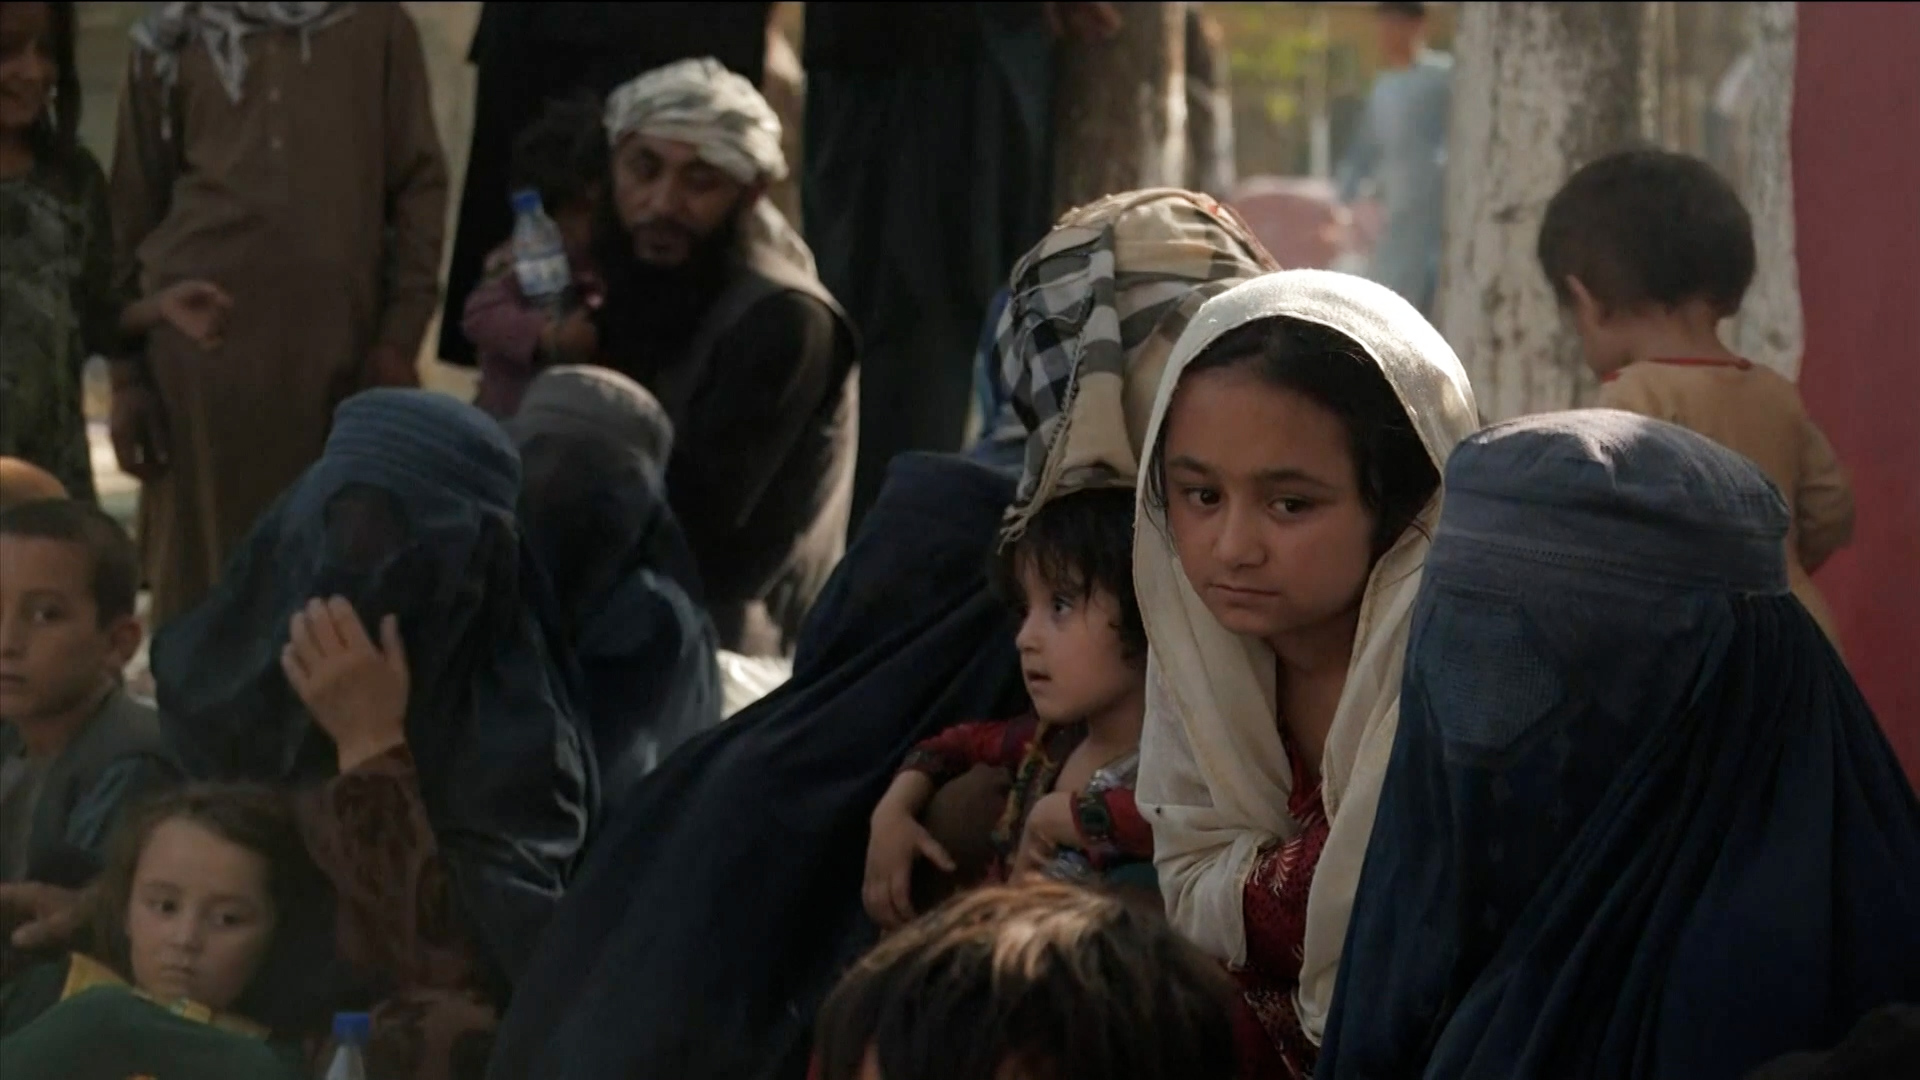 阿富汗女性面对不确定的未来